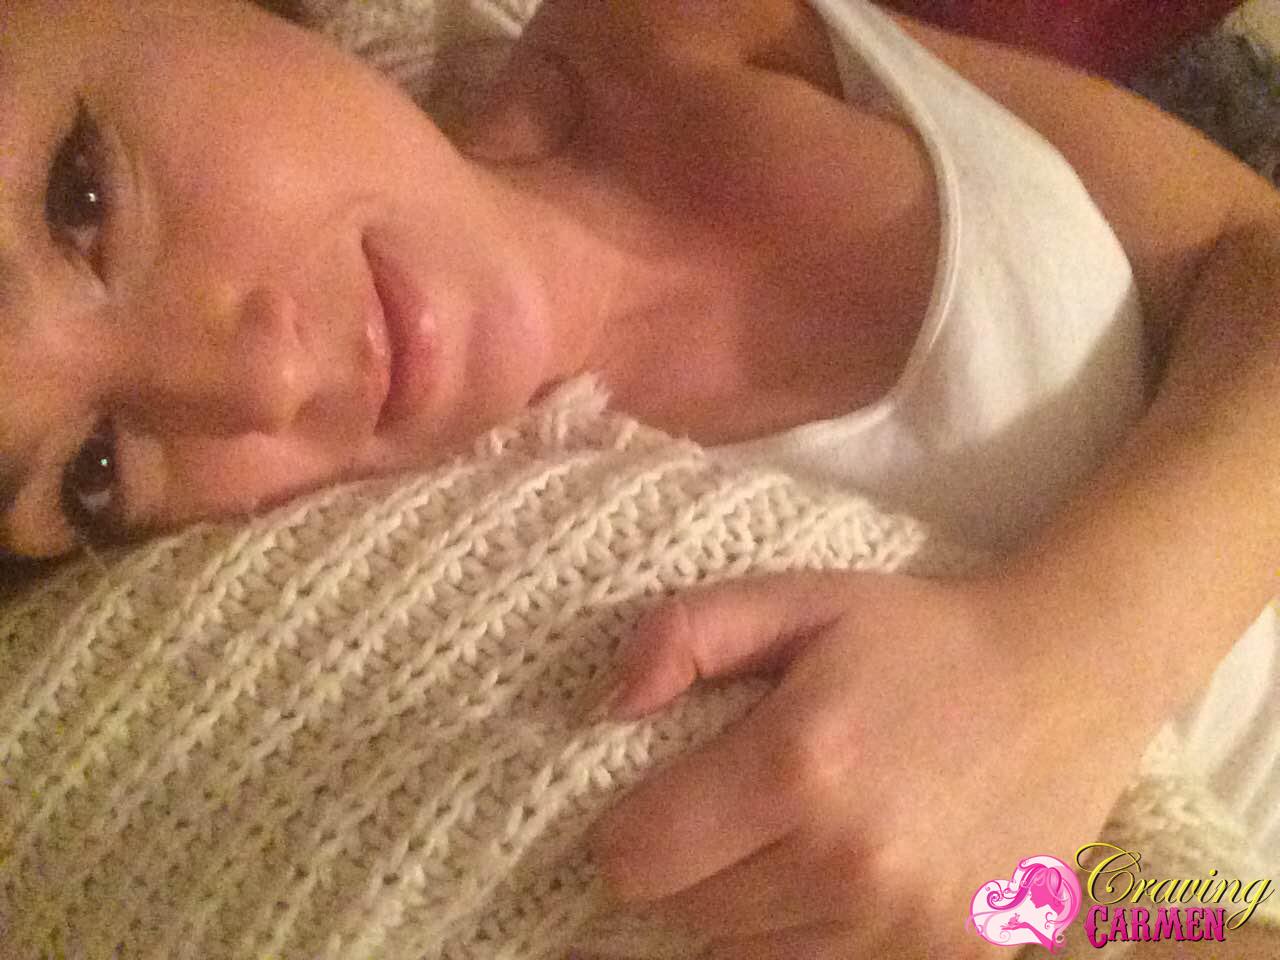 Craving carmen se desnuda y se toma selfies en la cama
 #53874242